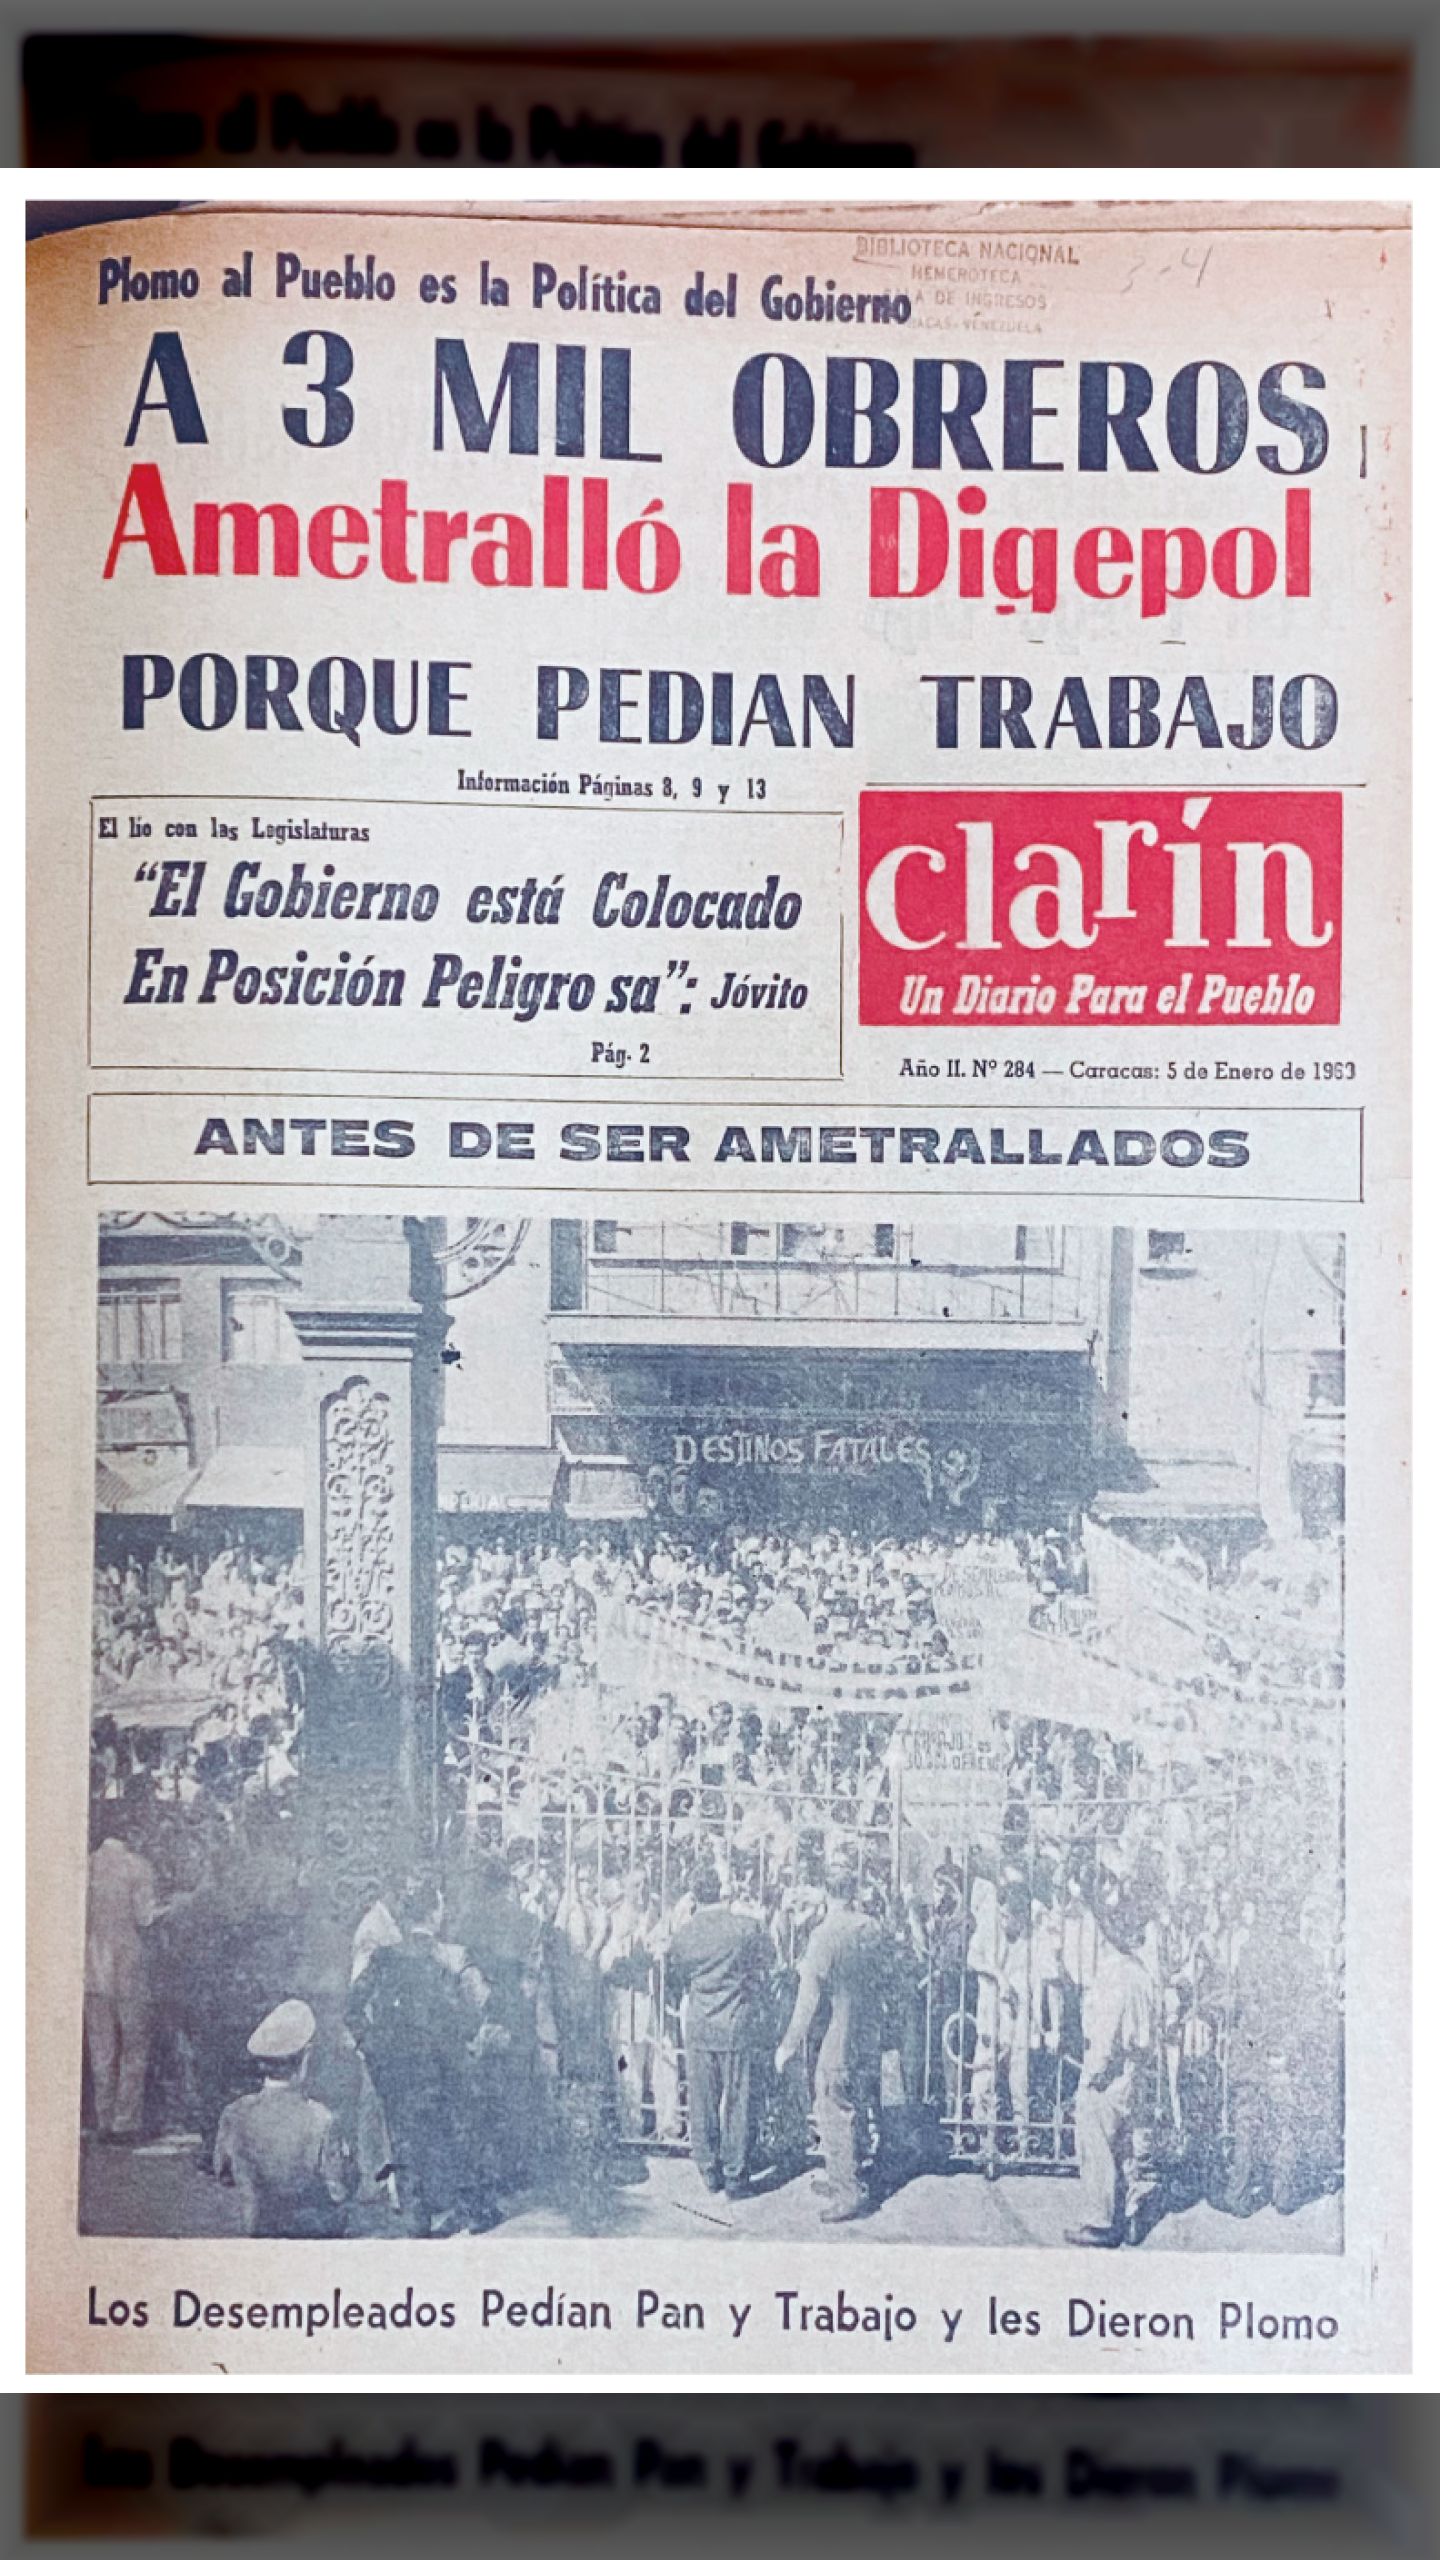 A 3 MIL OBREROS AMETRALLÓ LA DIGEPOL PORQUE PEDÍAN TRABAJO (CLARÍN, 5 de enero de 1963)